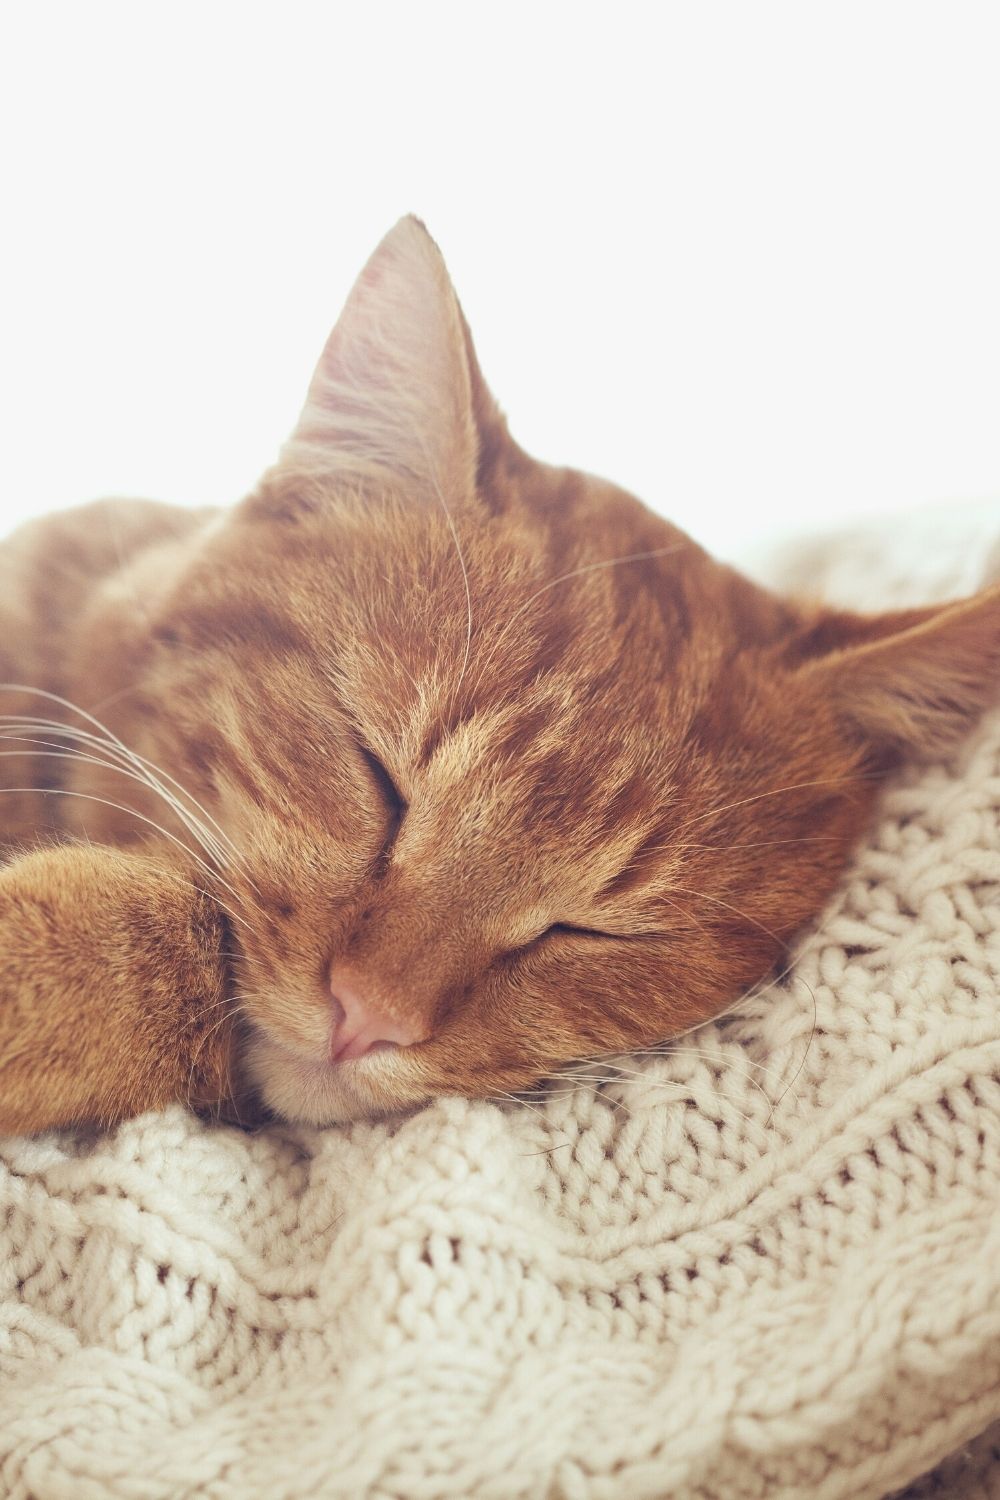 Les chats bougent légèrement leurs oreilles pendant le sommeil, indiquant le niveau de sommeil dans lequel ils se trouvent